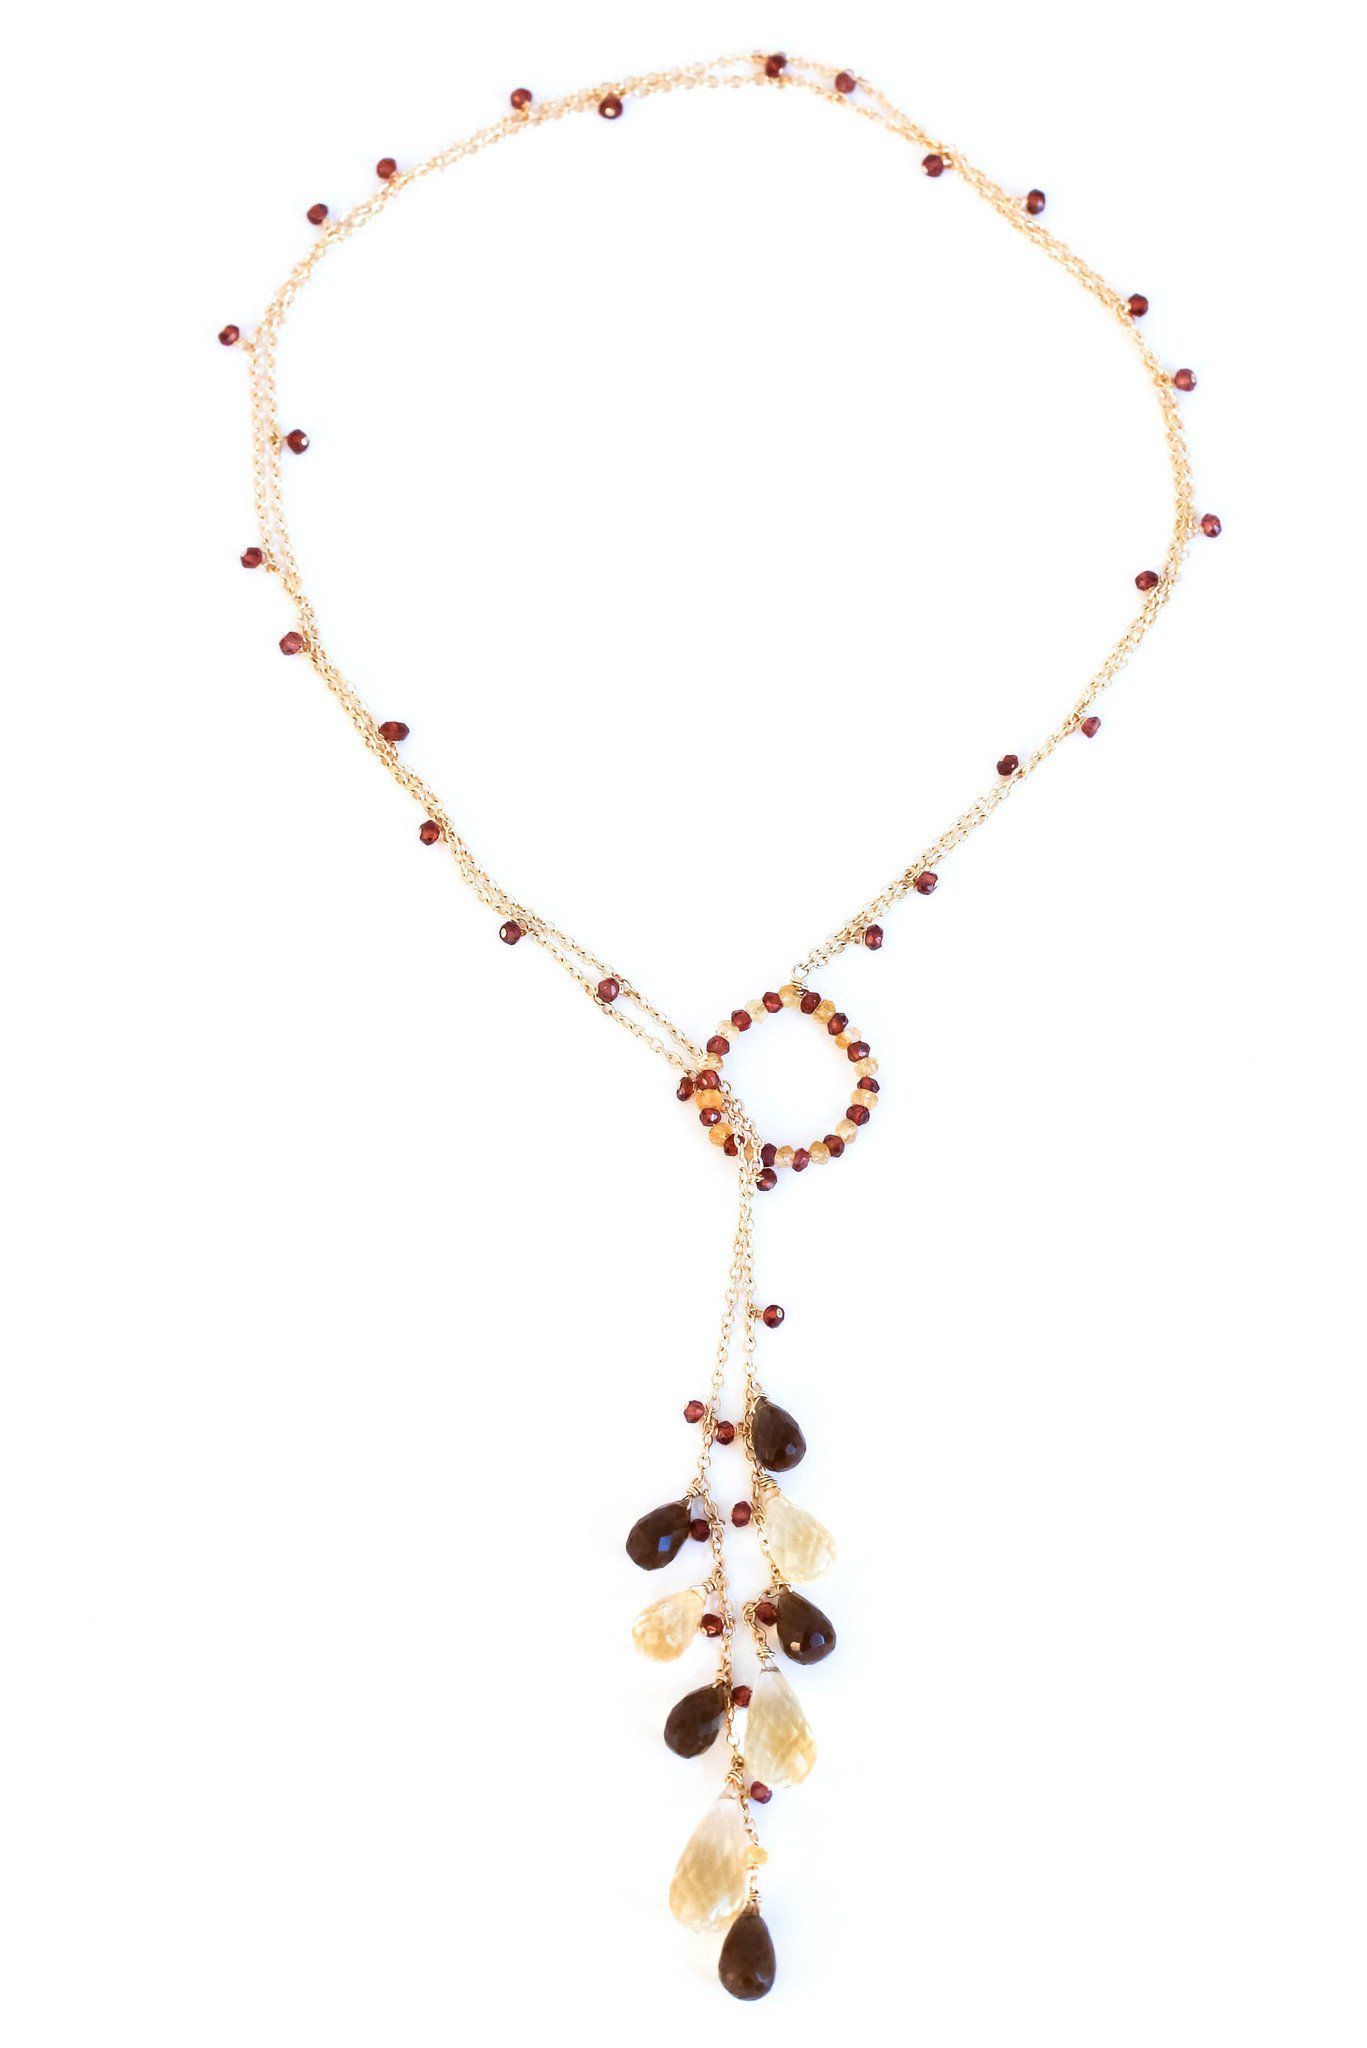 Buy Smoky Topaz Pendant Necklace Online - Precious Gemstone Jewelry NY -  INAYA